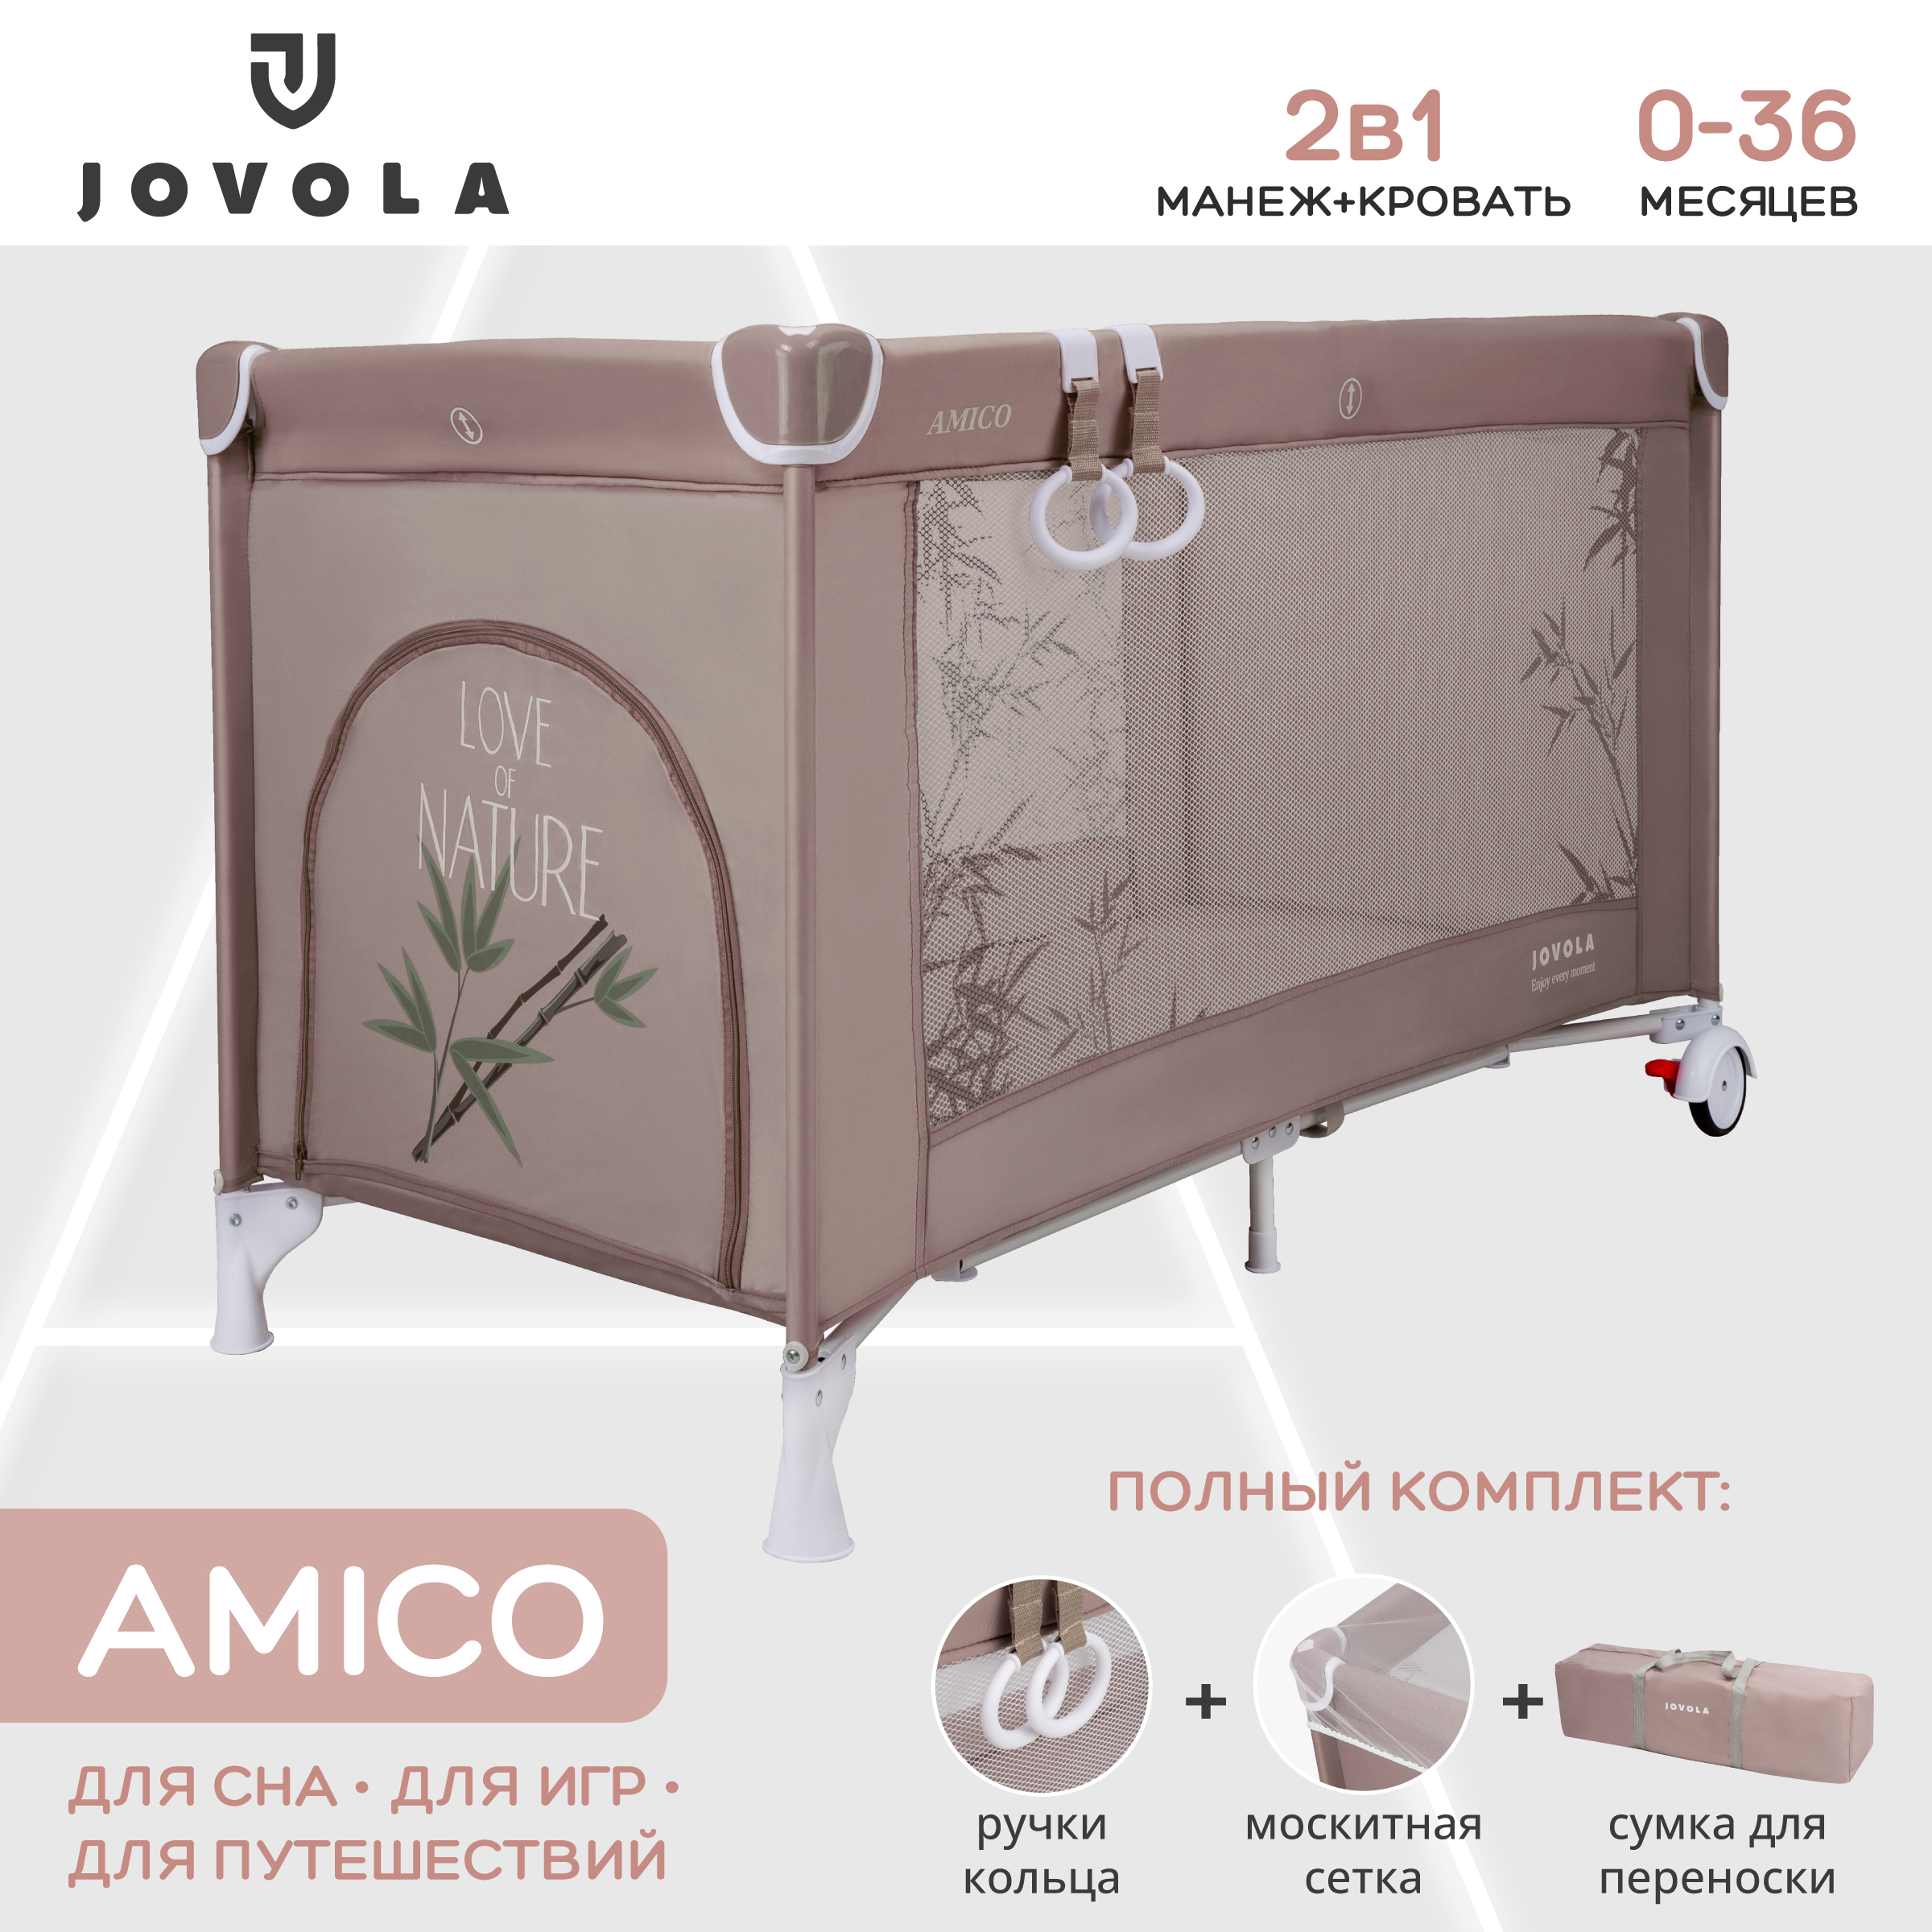 Манеж-кровать JOVOLA Amico 1 уровень москитная сетка 2 кольца бежевый бамбук мокко 4657792384939 - фото 1